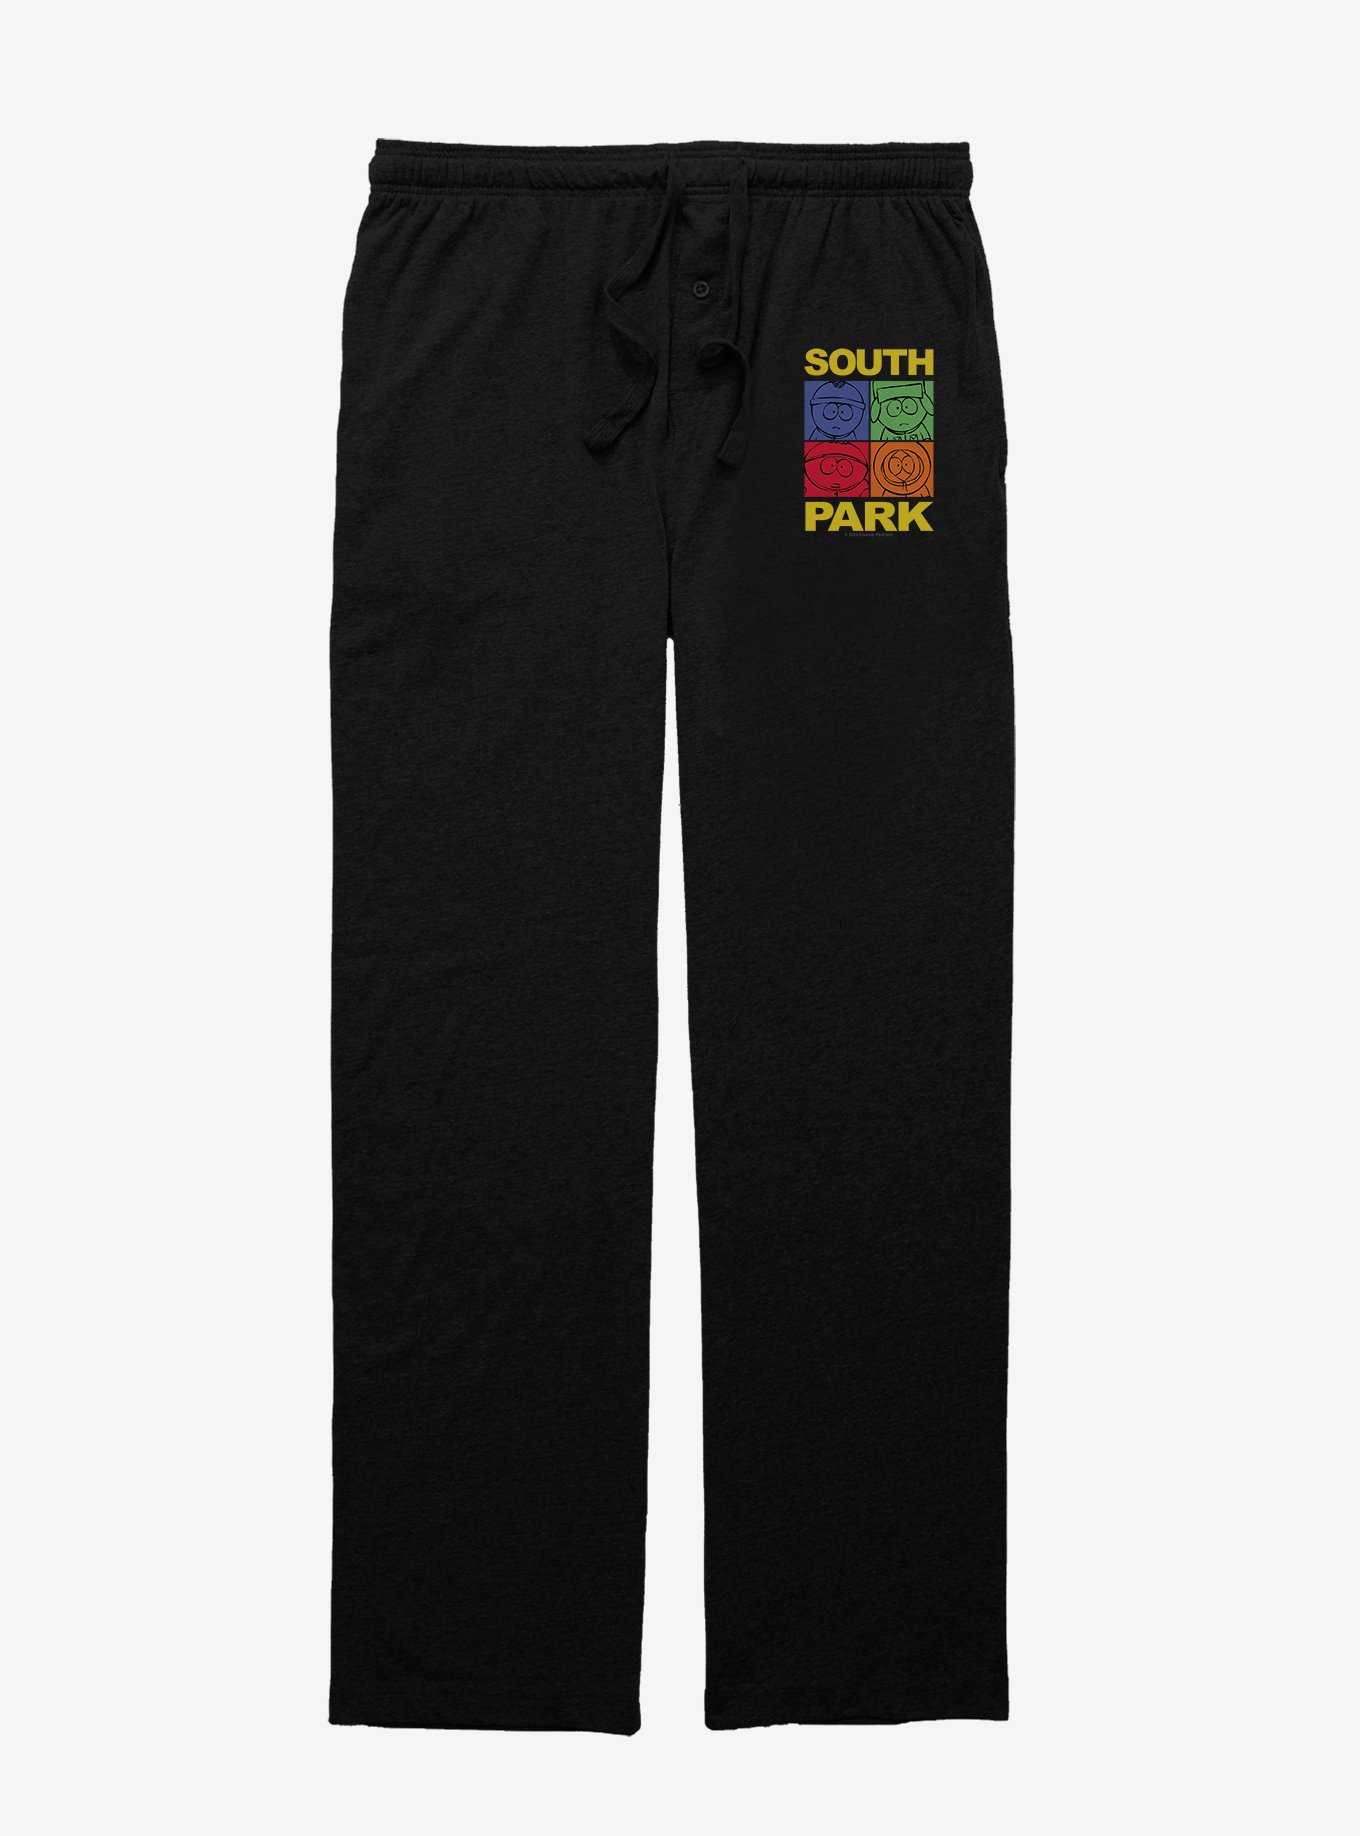 South Park Mood Meter Pajama Pants, , hi-res